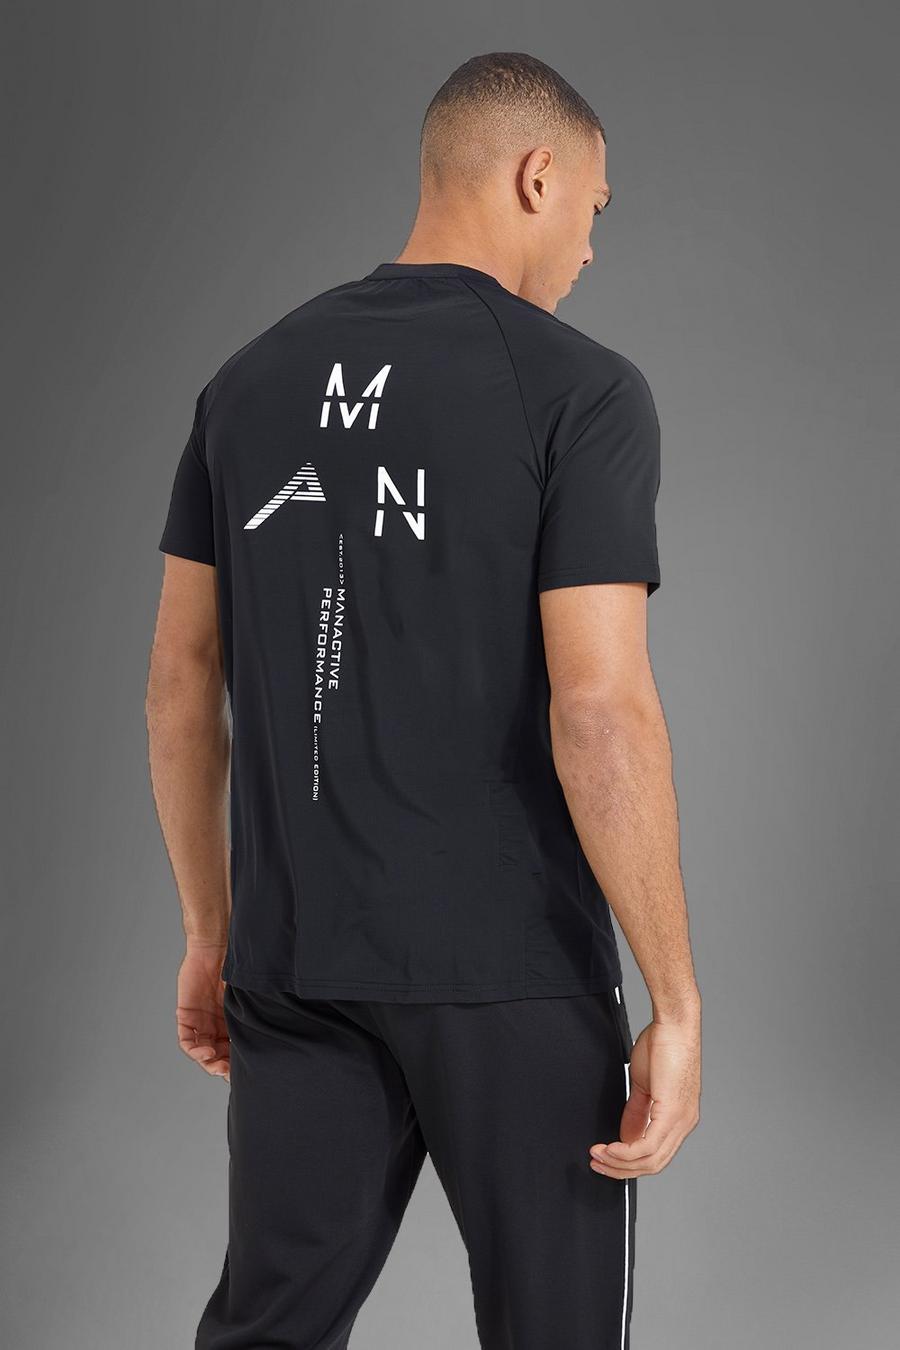 T-shirt Man Active Gym con stampa riflettente sul retro, Black negro